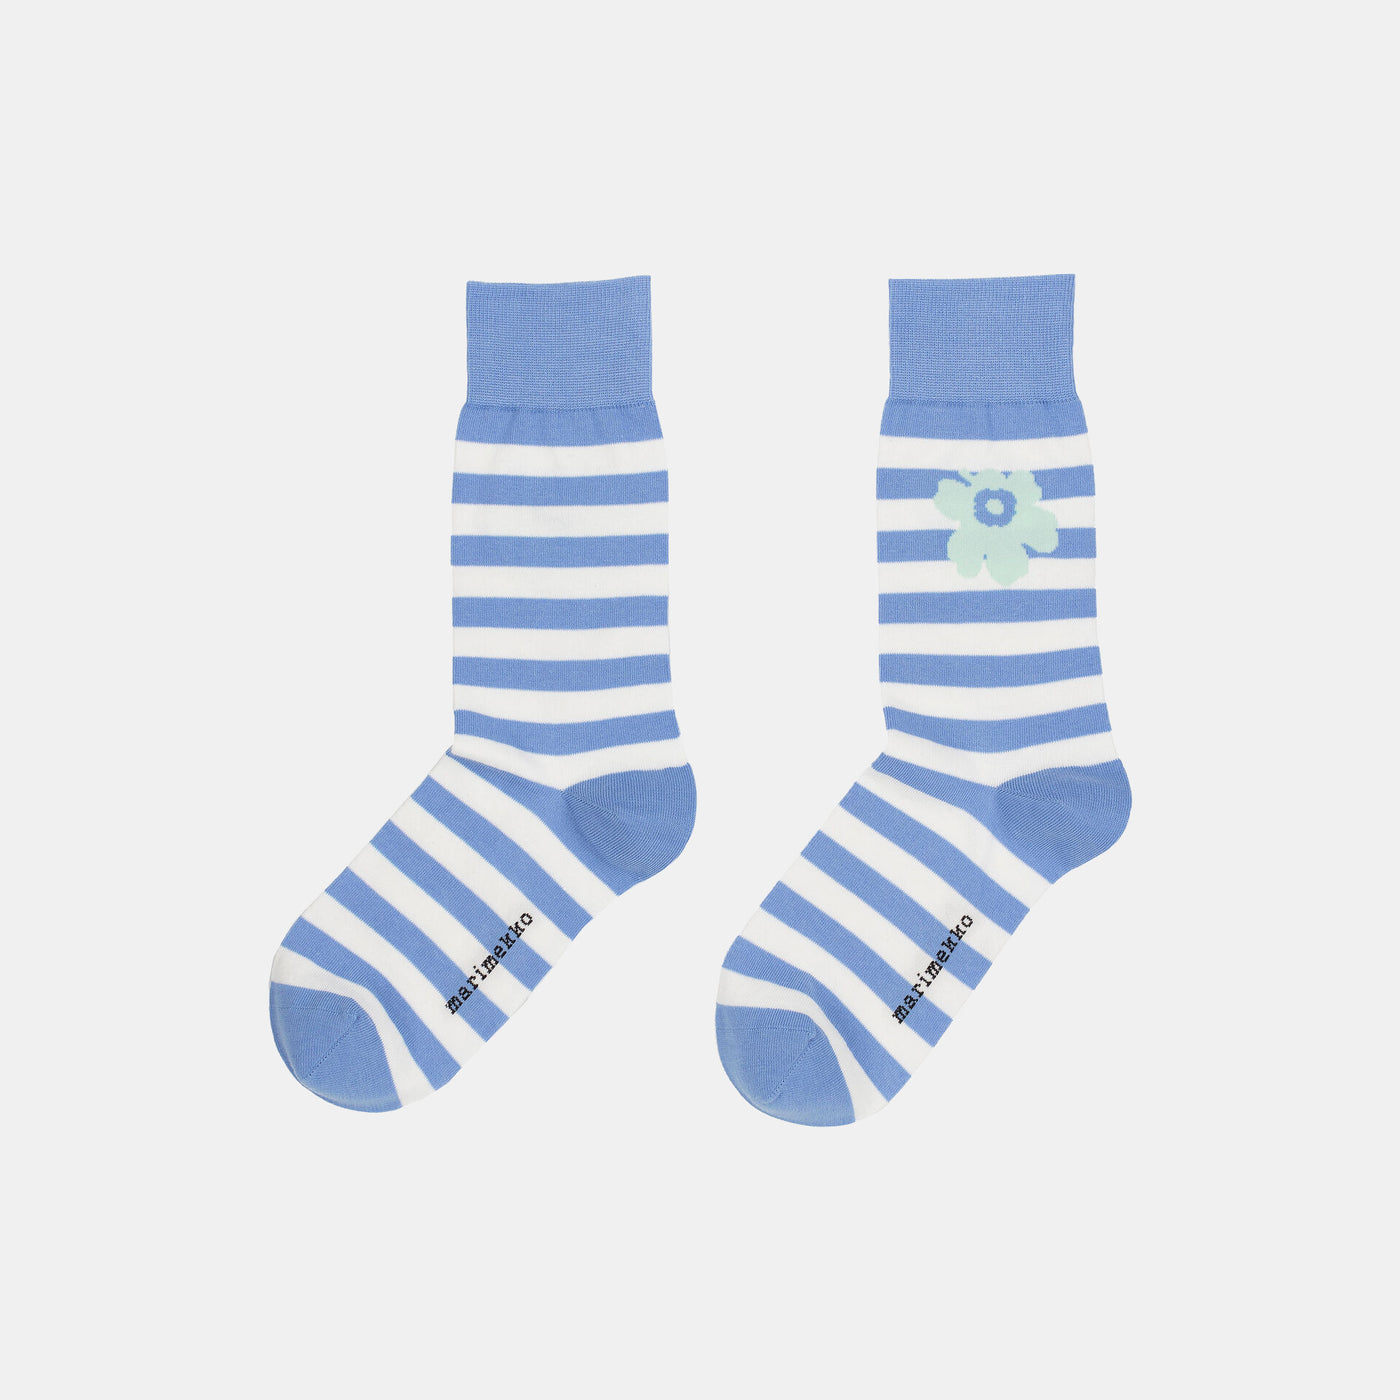 Kasvaa Tasaraita Unikko Socks - blue, light green, white